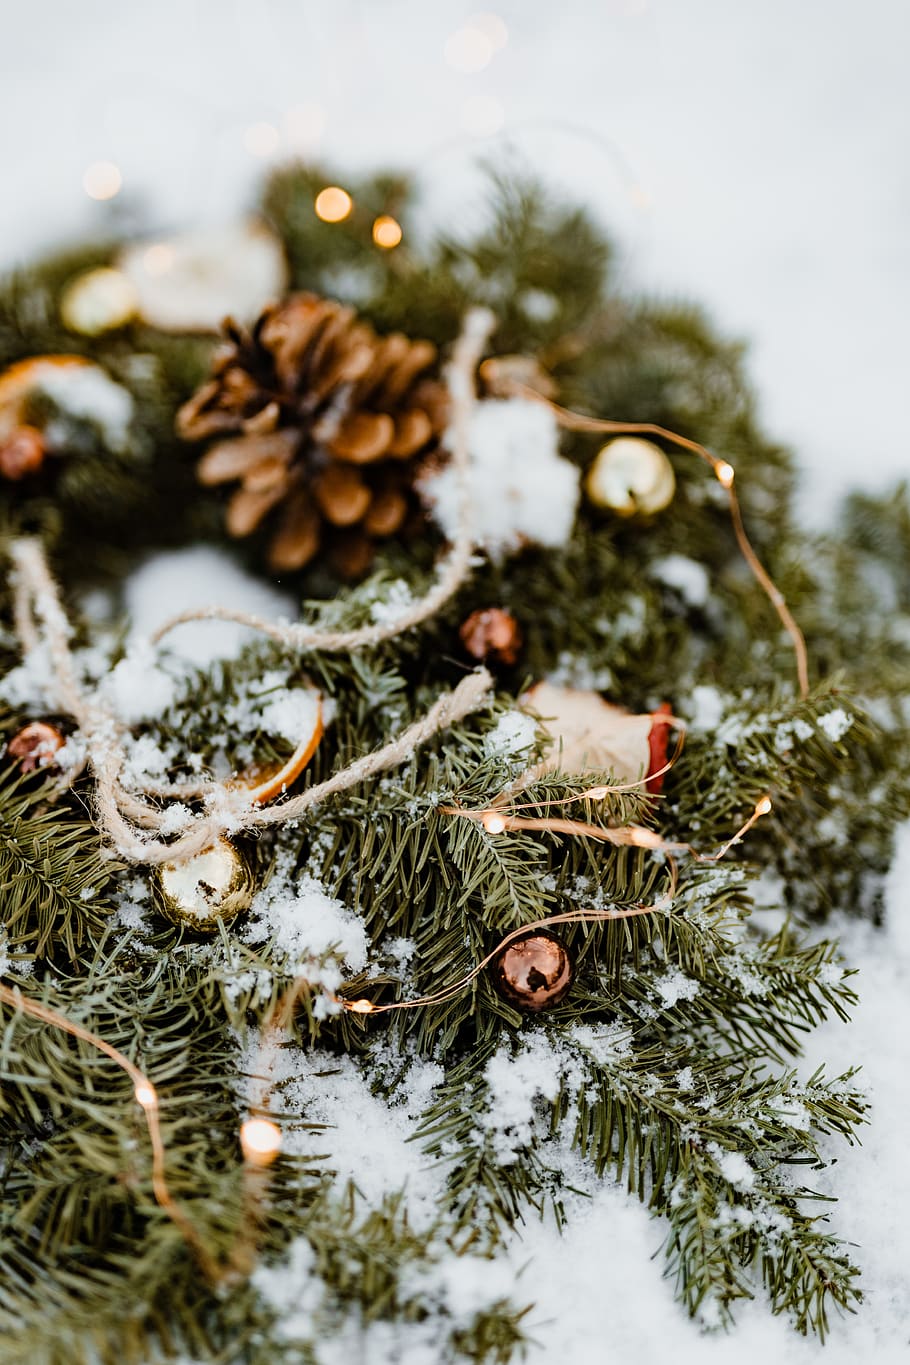 decoración, decoraciones, diciembre, nieve, invierno, guirnalda, árbol, Navidad, temperatura fría, planta